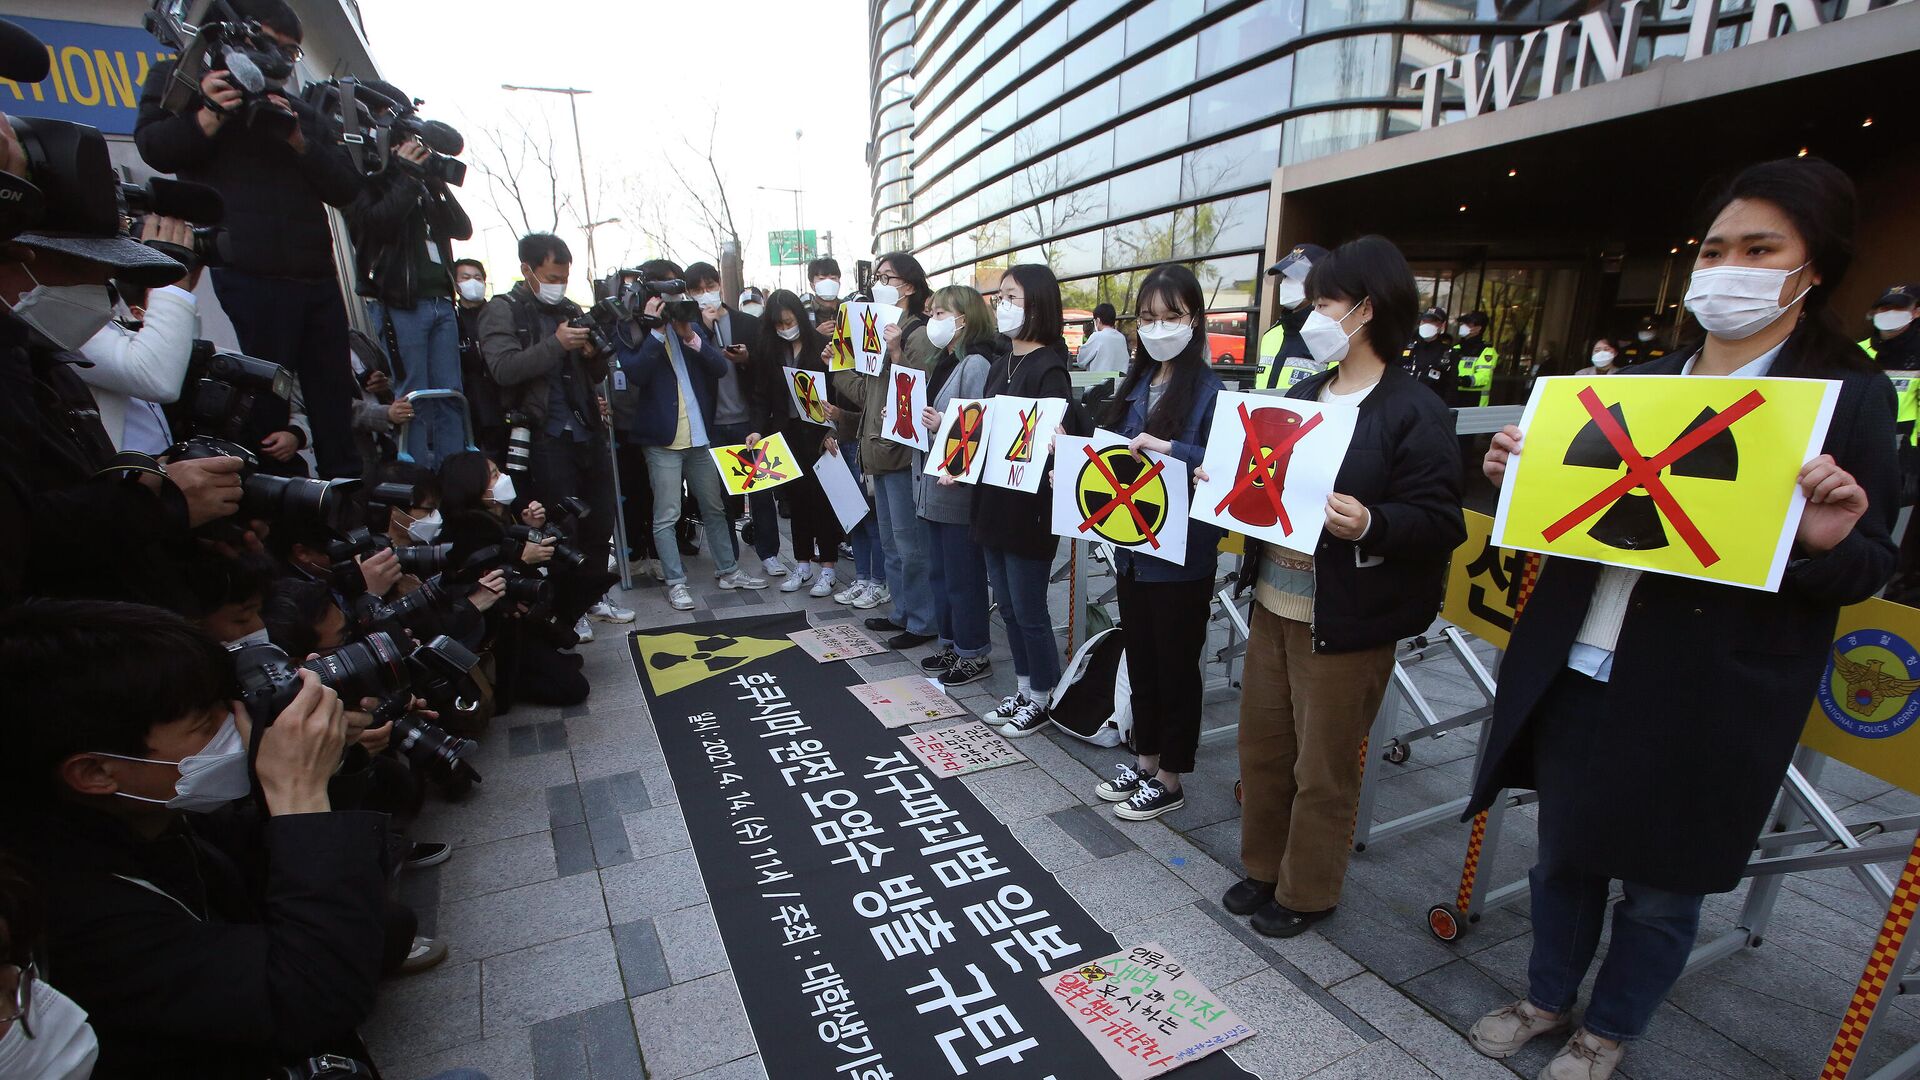 Активисты-экологи проводят митинг, осуждая решение правительства Японии по воде на Фукусиме - Sputnik Таджикистан, 1920, 14.04.2021